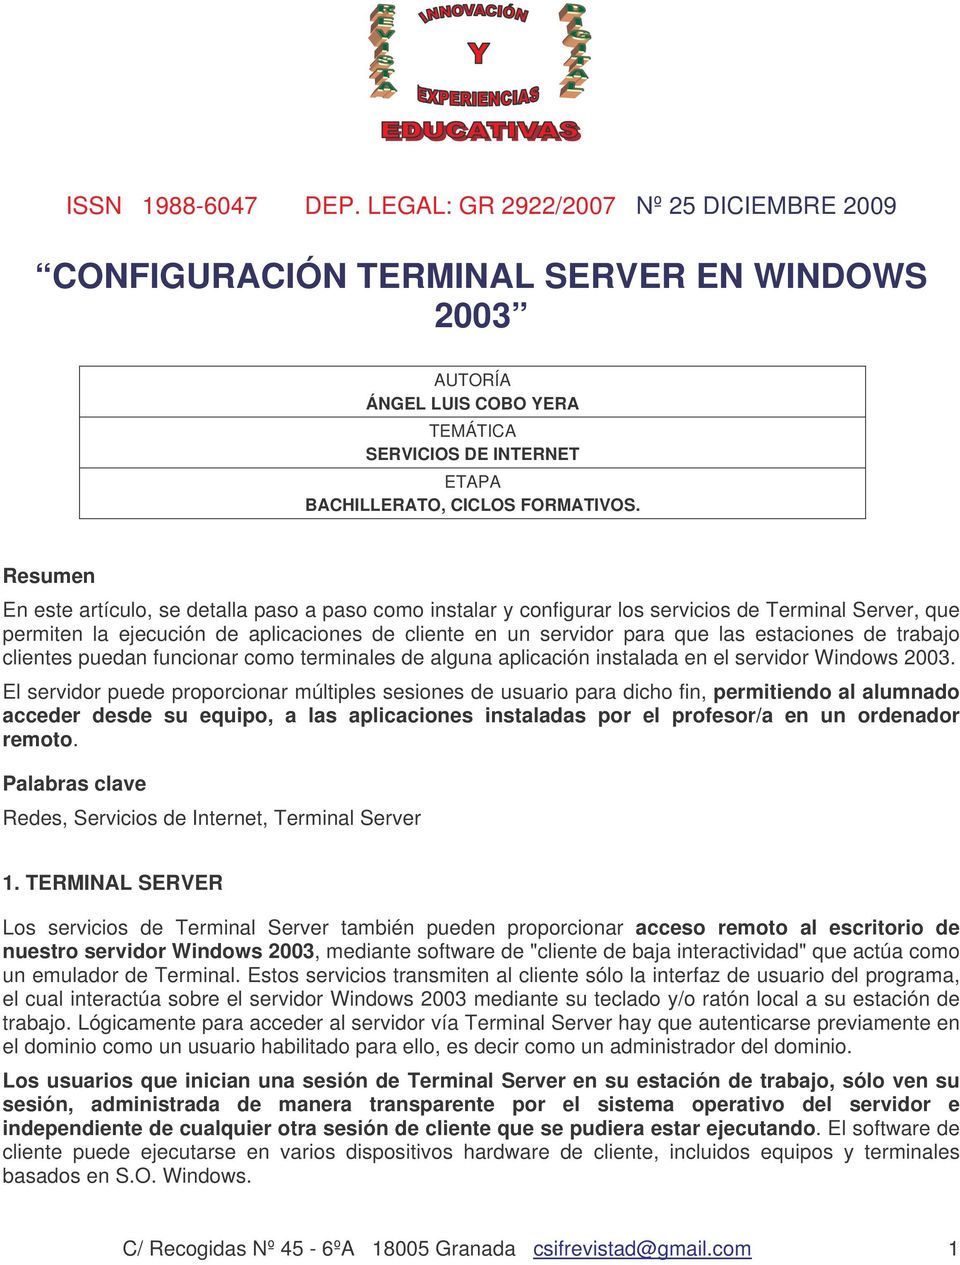 estaciones de trabajo clientes puedan funcionar como terminales de alguna aplicación instalada en el servidor Windows 2003.